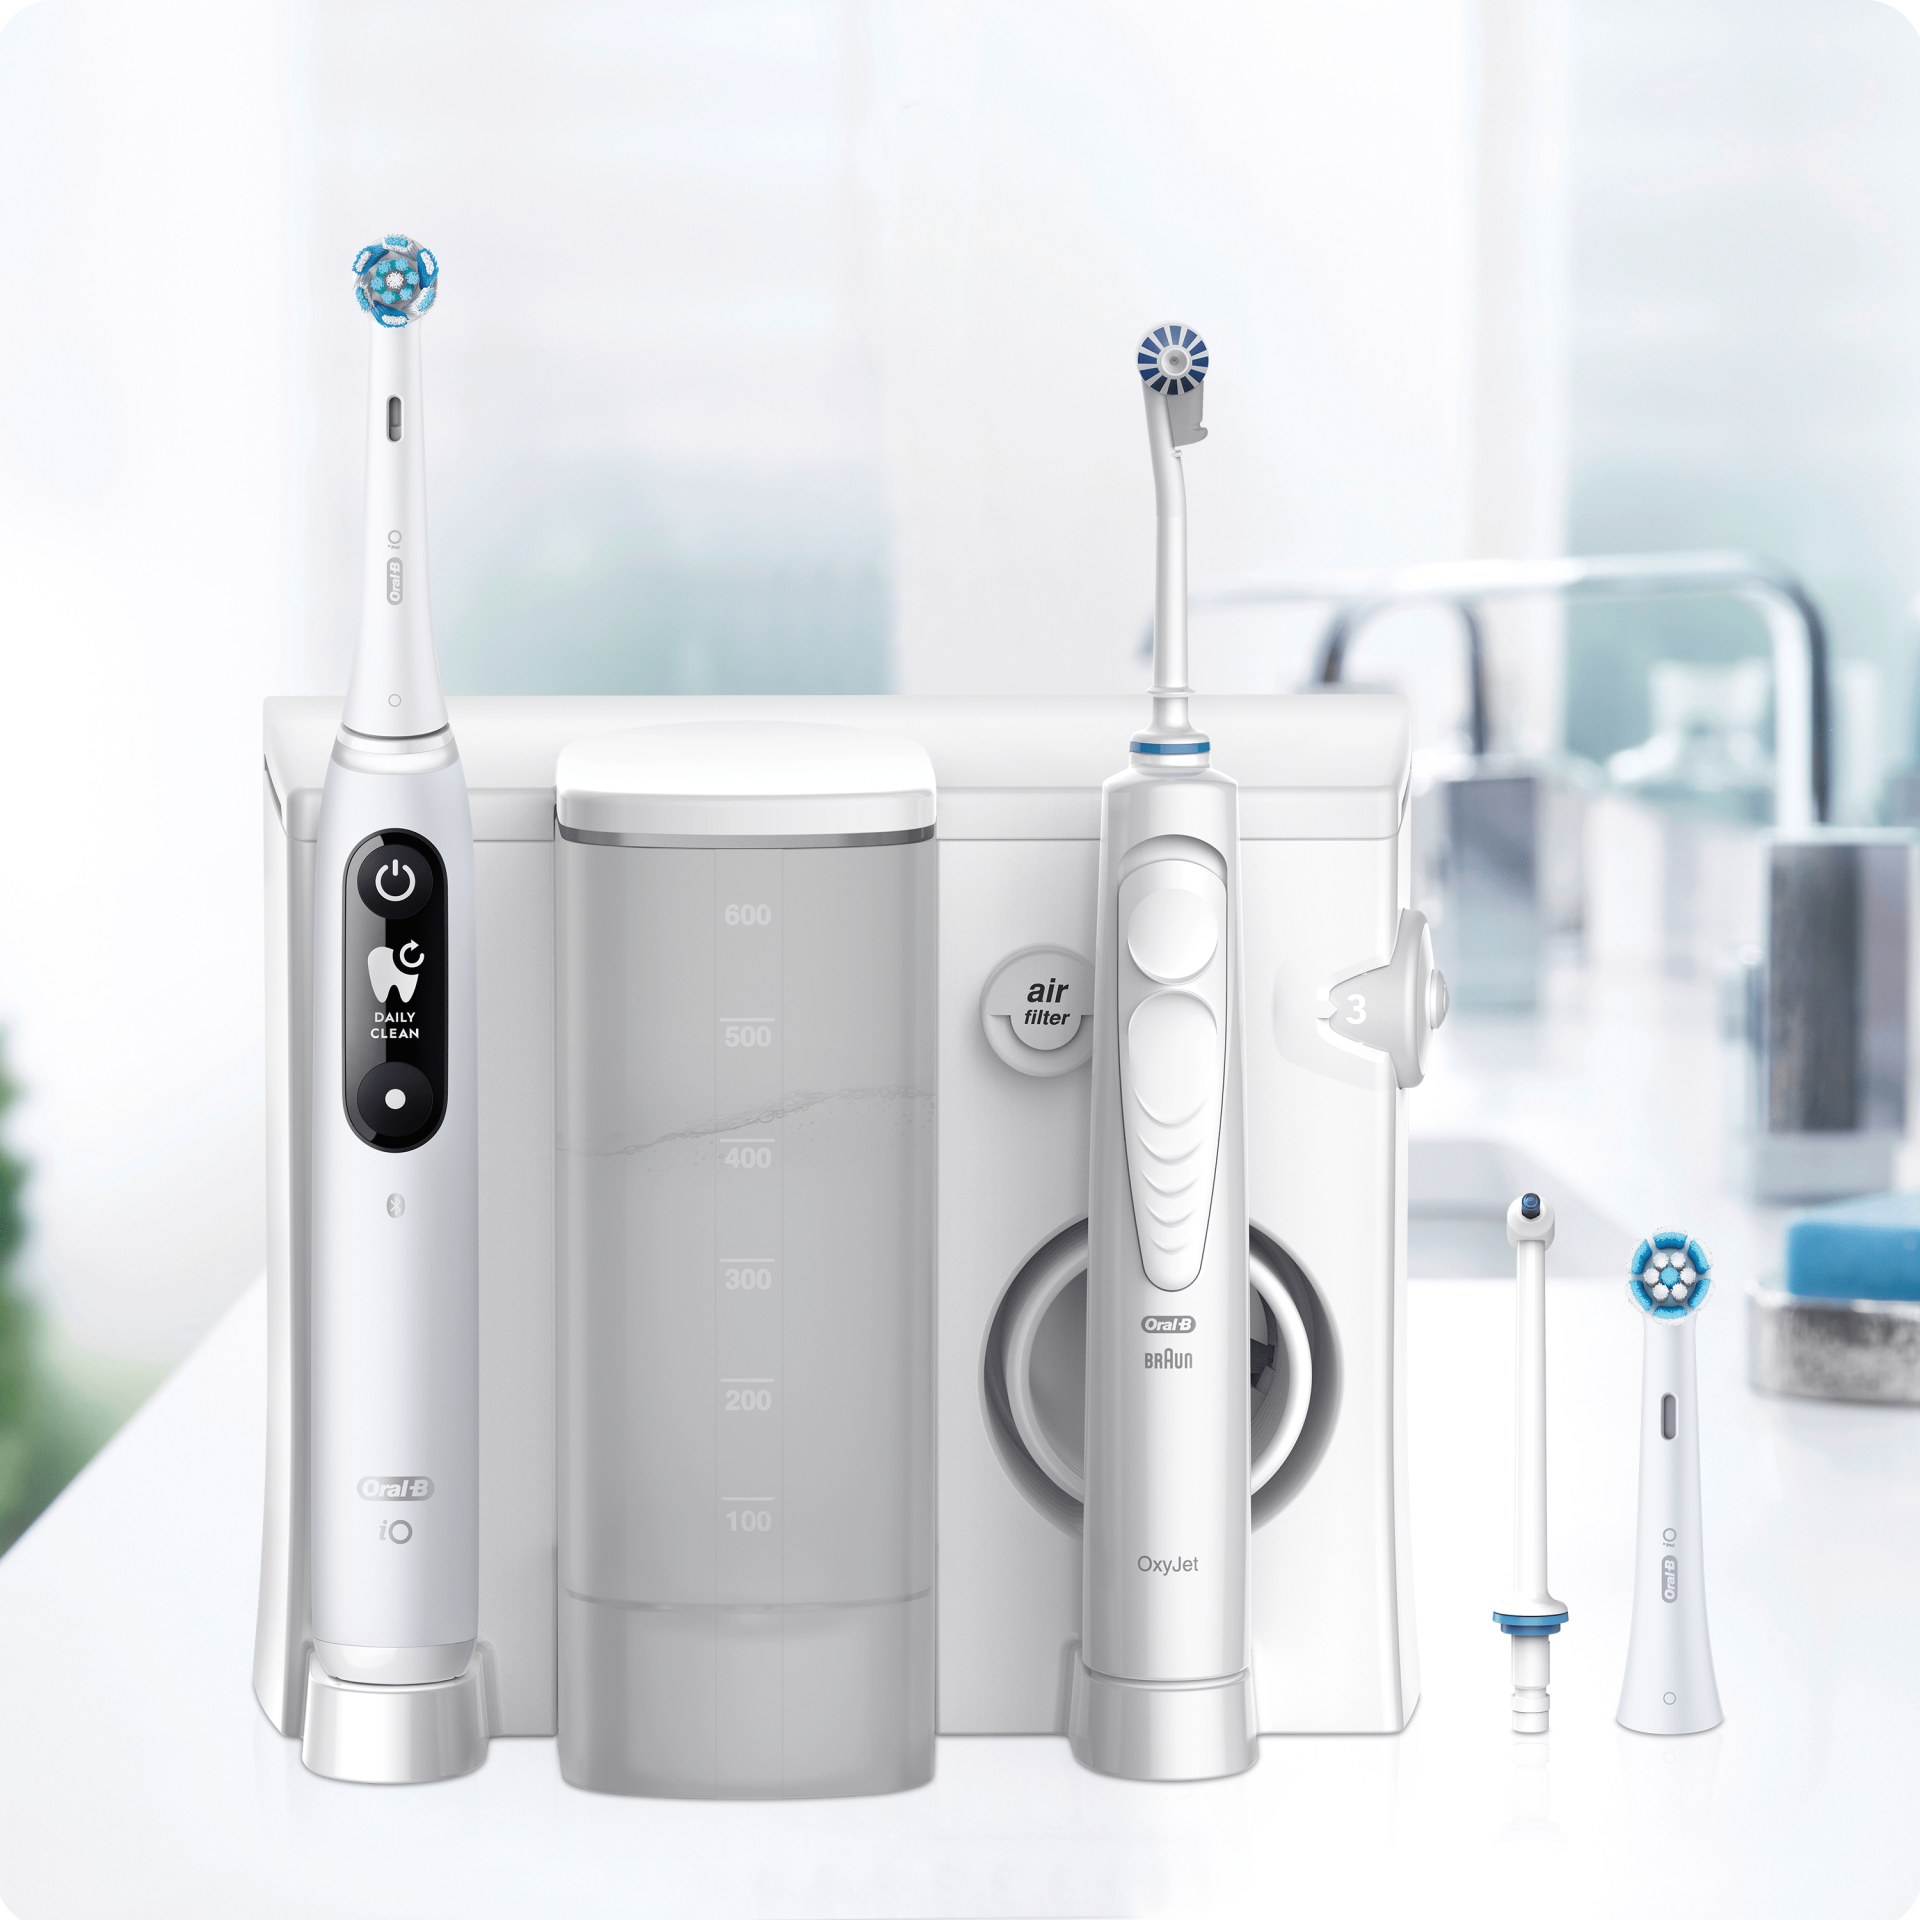 Oral-b oral center spazzolino elettrico smart 5000 e idropulsore oxyjet con  4 testine oxyjet + 6 testine di ricambio - Vivafarmacia